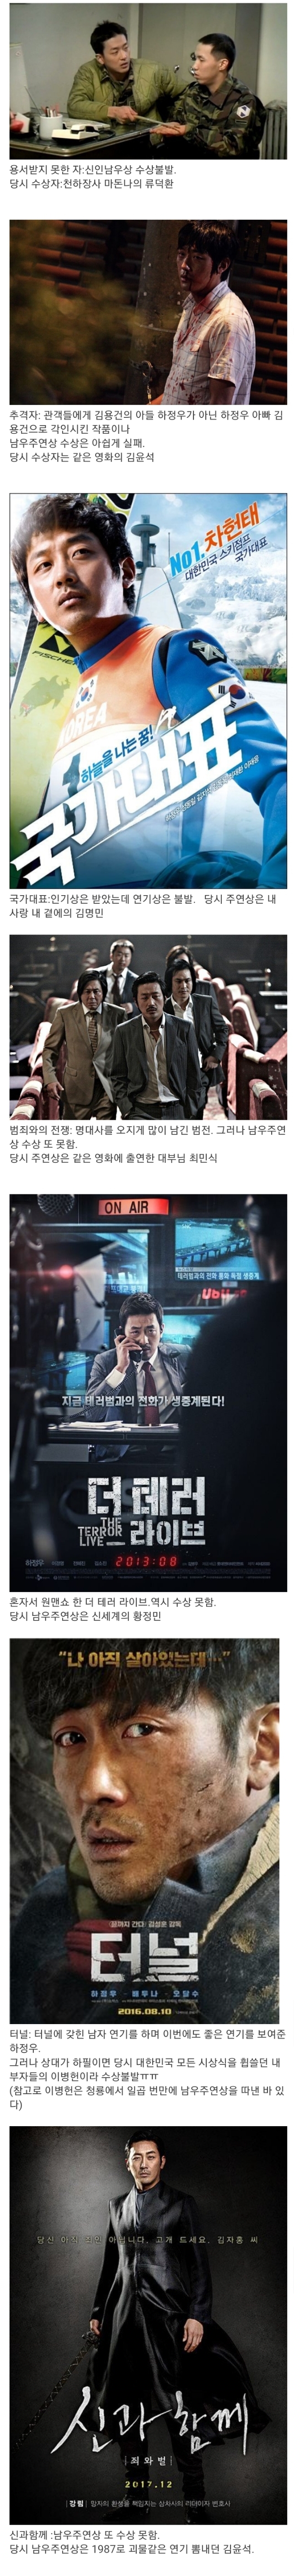 청룡영화제에서 연기상을 한 번도 못 받은 배우.jpg